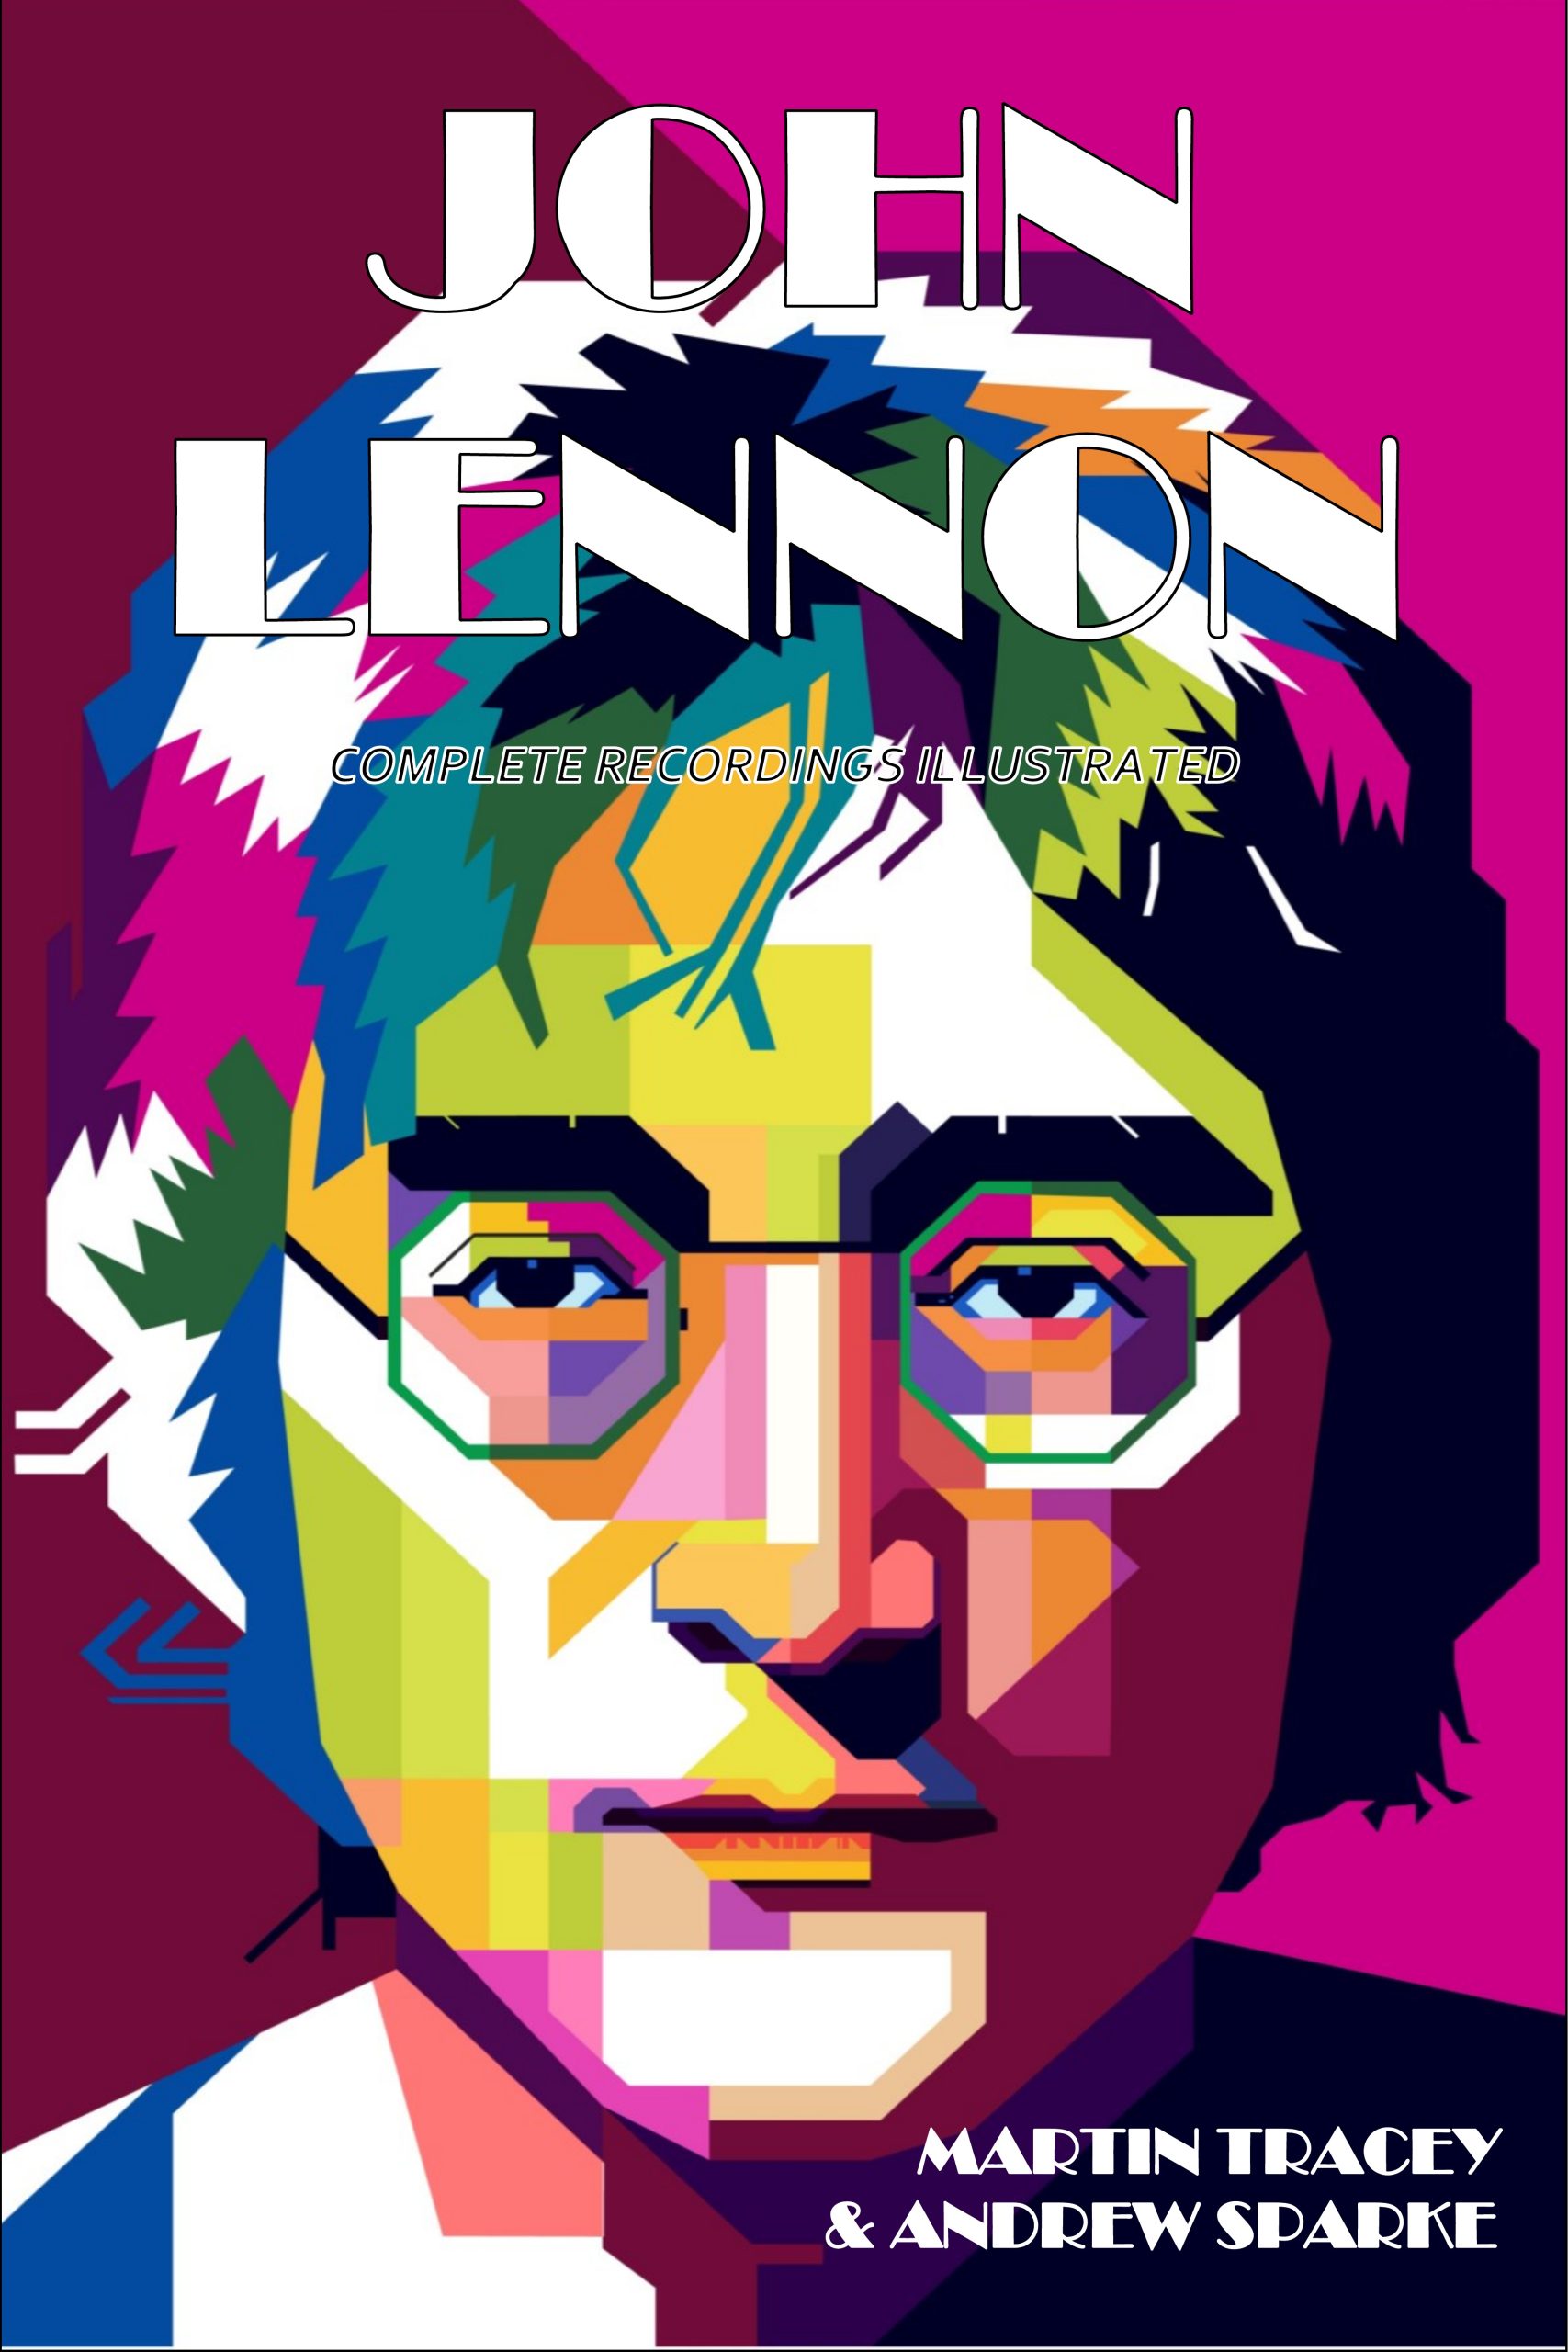 book cover discography John Lennon?